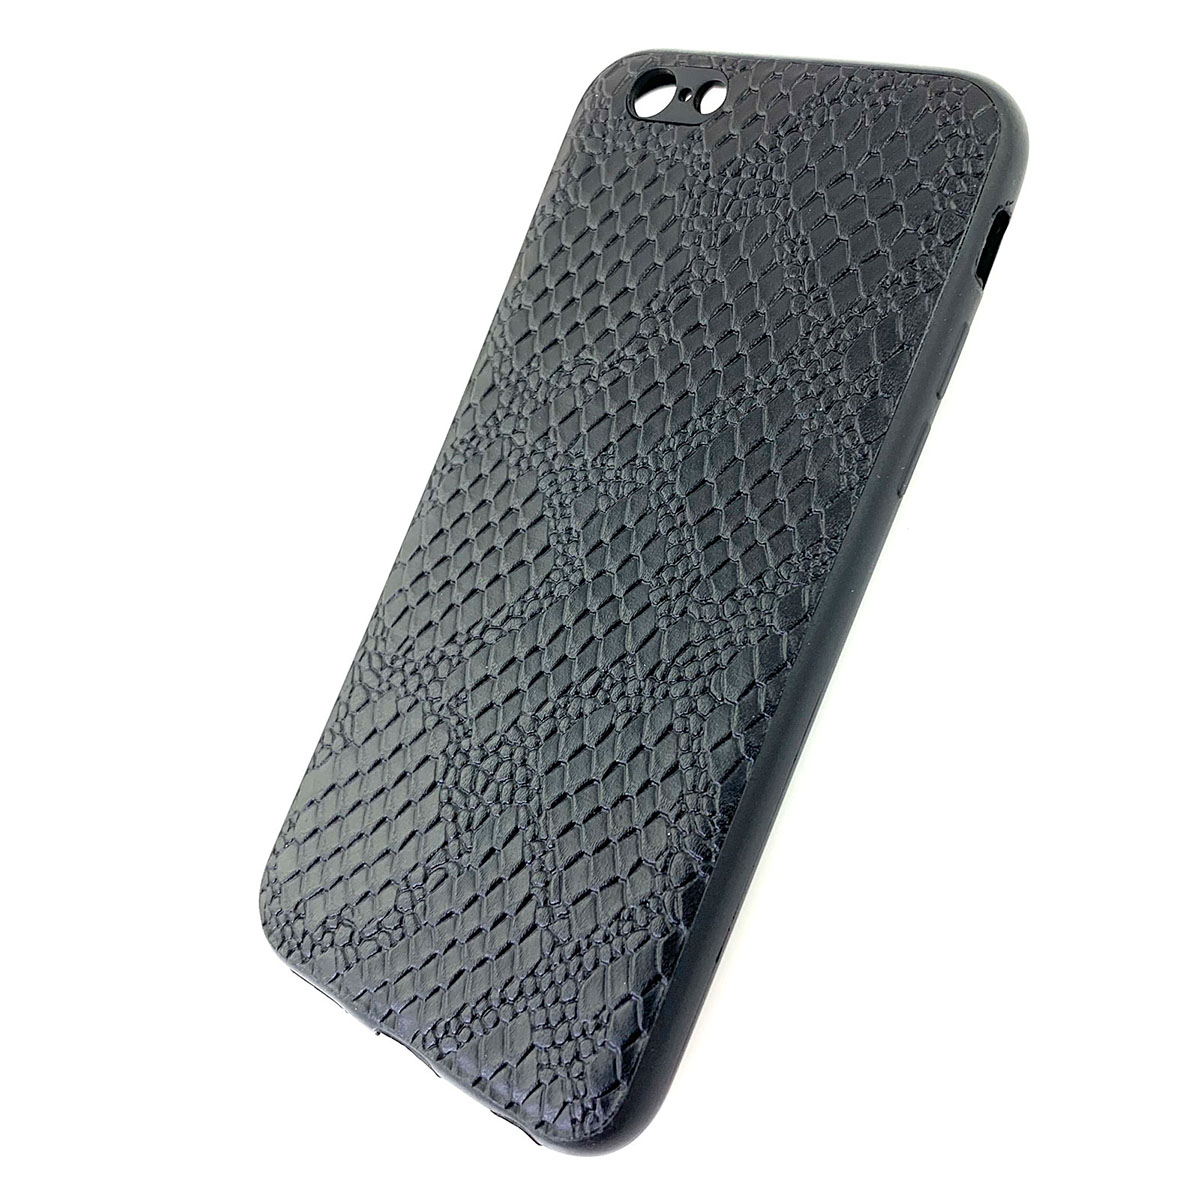 Чехол накладка для APPLE iPhone 6, 6G, 6S, силикон, под кожу питона, цвет черный.